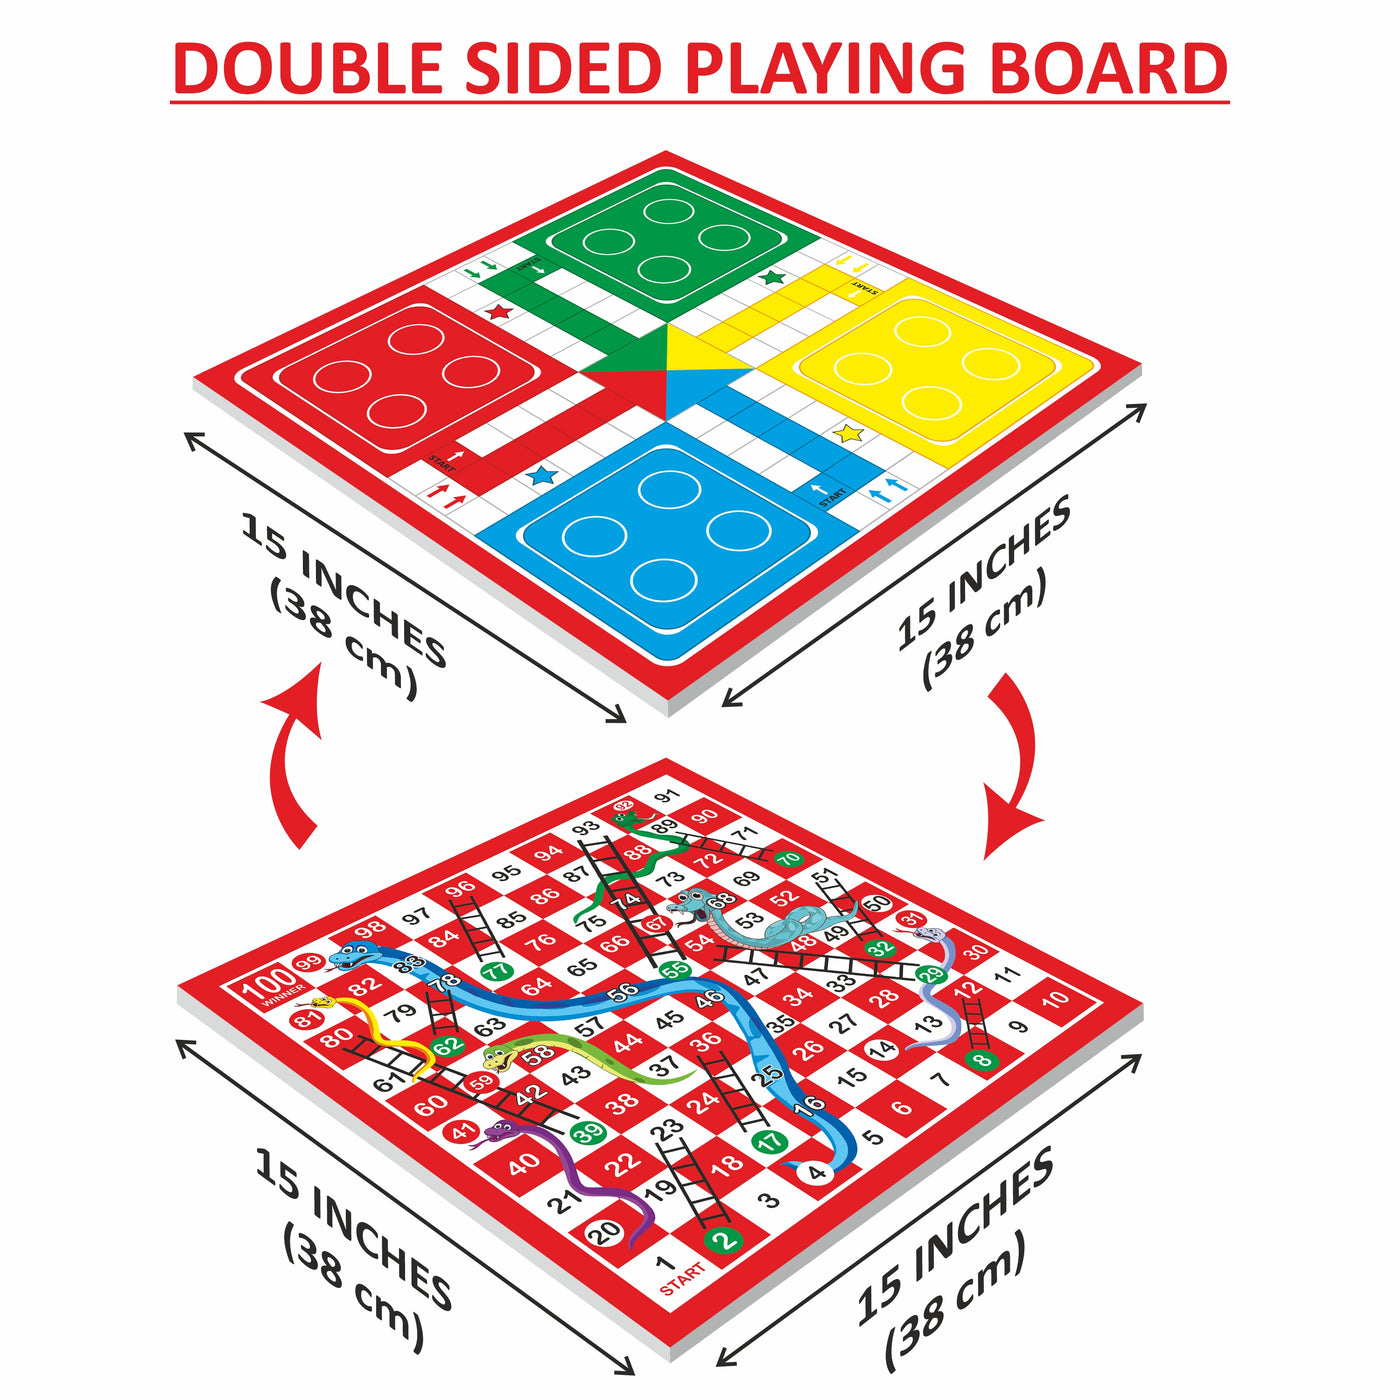 Ludo 15 Senior (New) Board Game